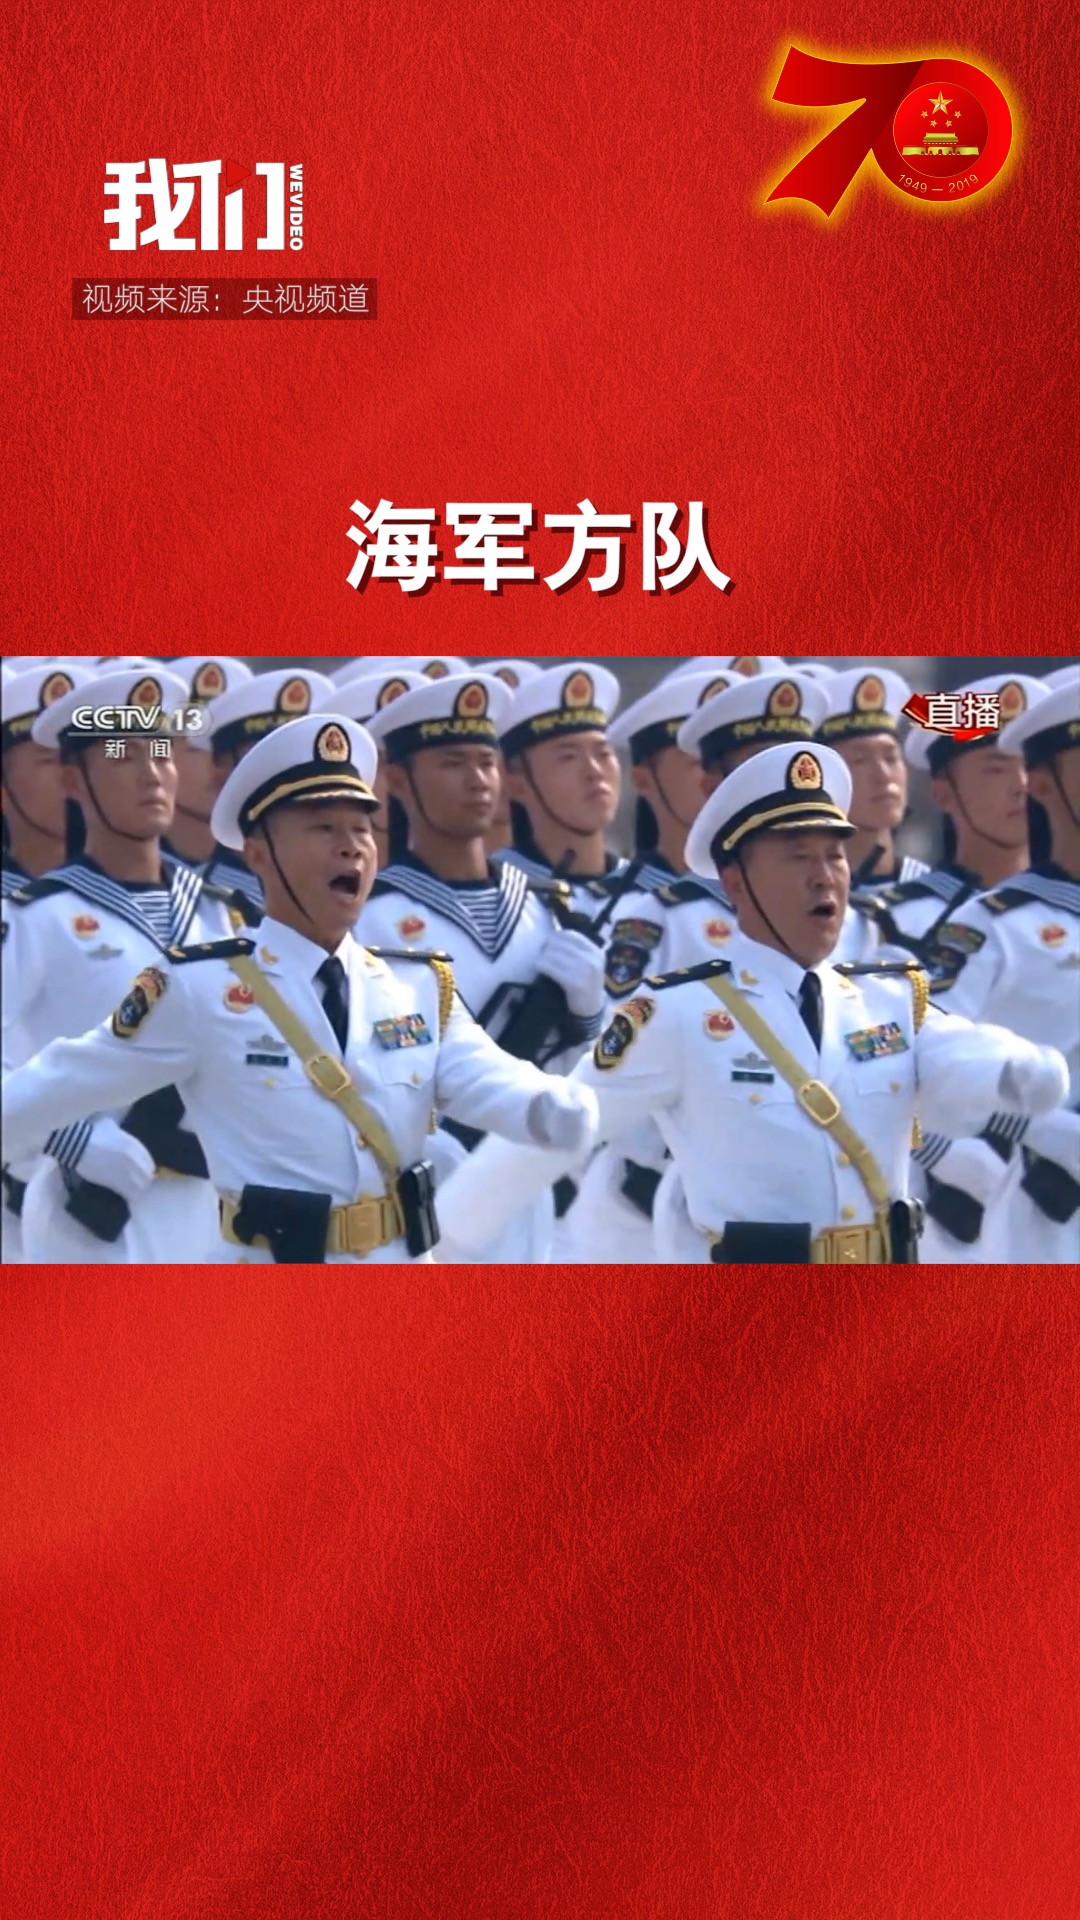 庆祝新中国成立70周年大阅兵:海军方队接受检阅